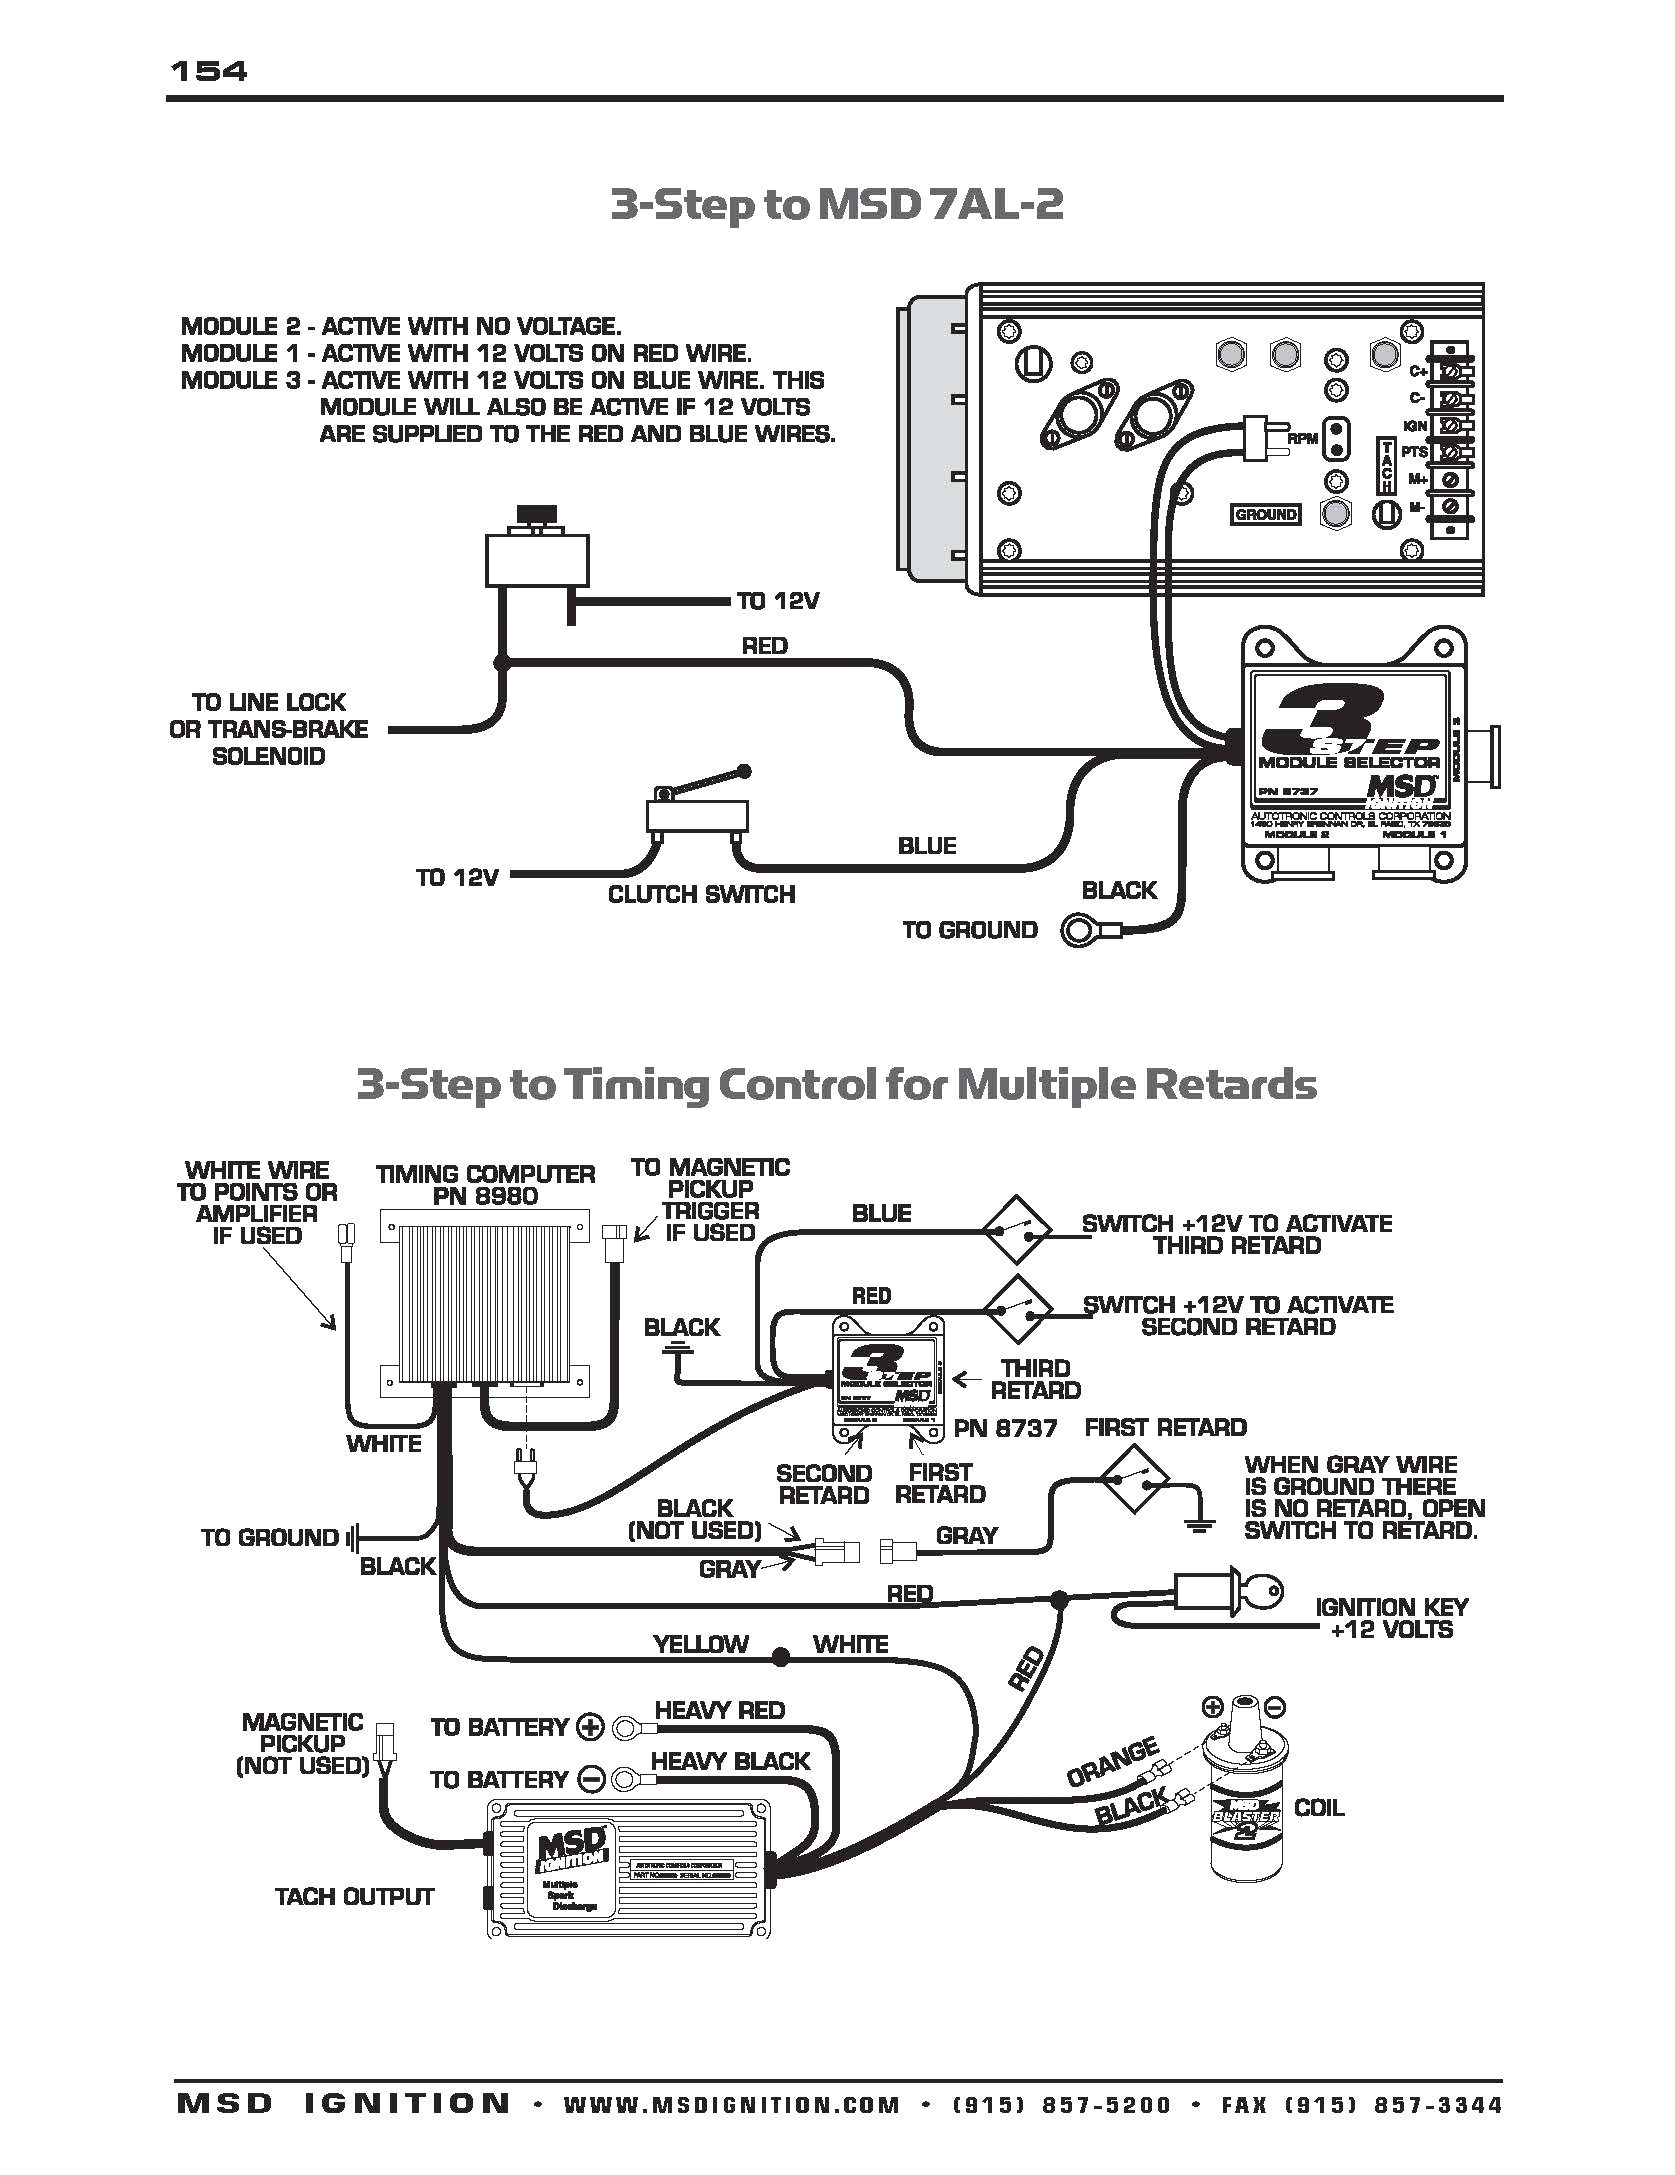 msd grid ignition wiring diagram schematic diagrams with ignition msd grid ignition wiring diagram schematic diagrams